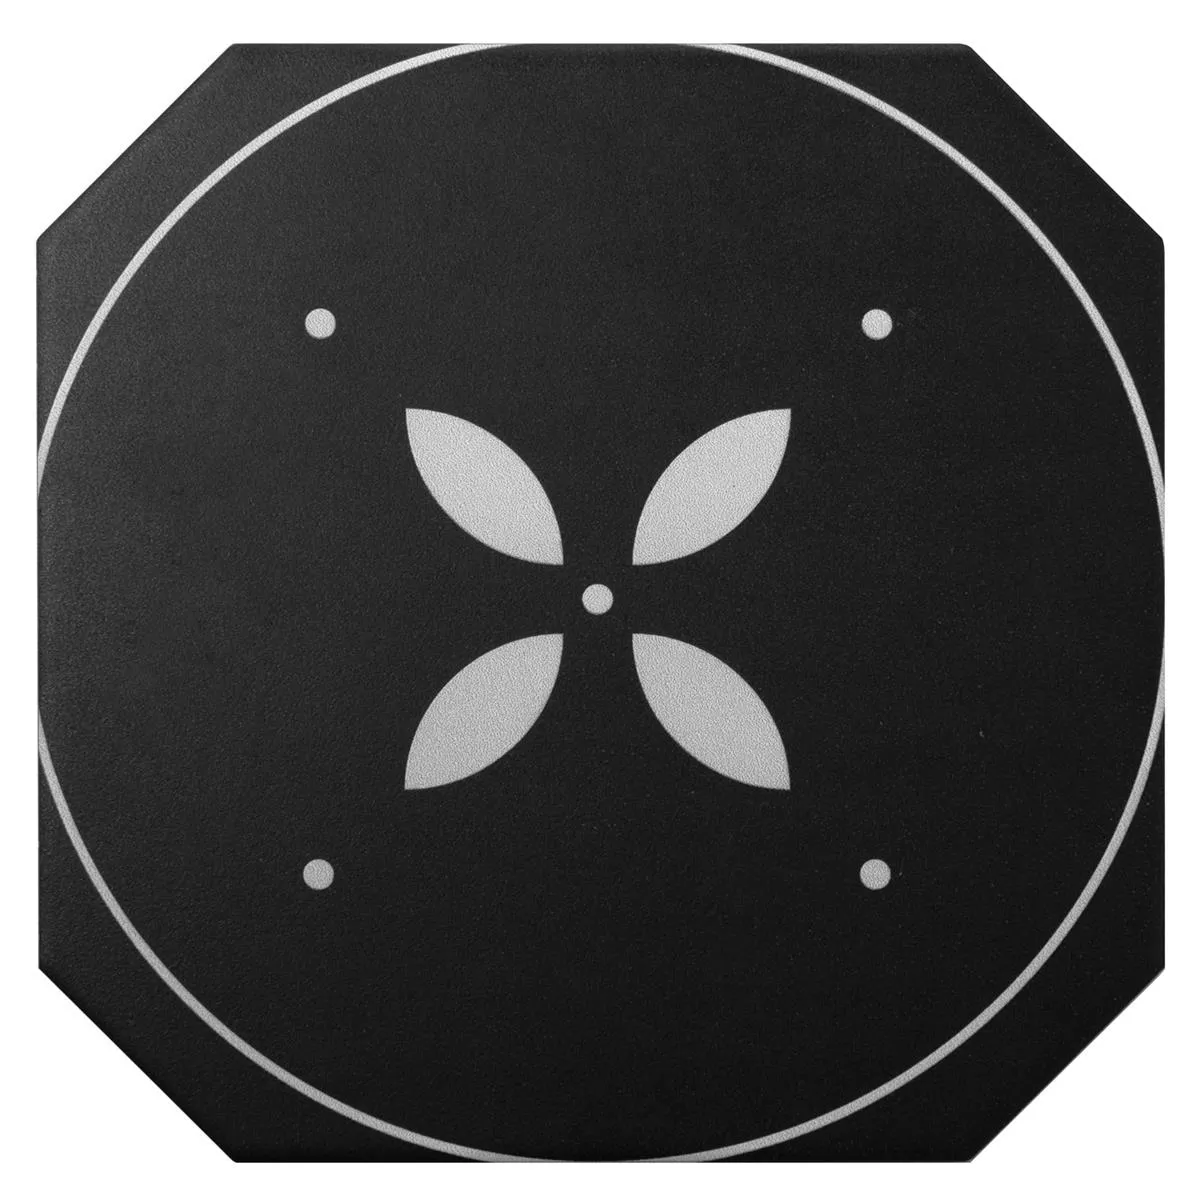 Kuvio Posliinikivitavarat Laatat Genexia Musta Valkoinen Decor 2 Kahdeksankulmio 20x20cm